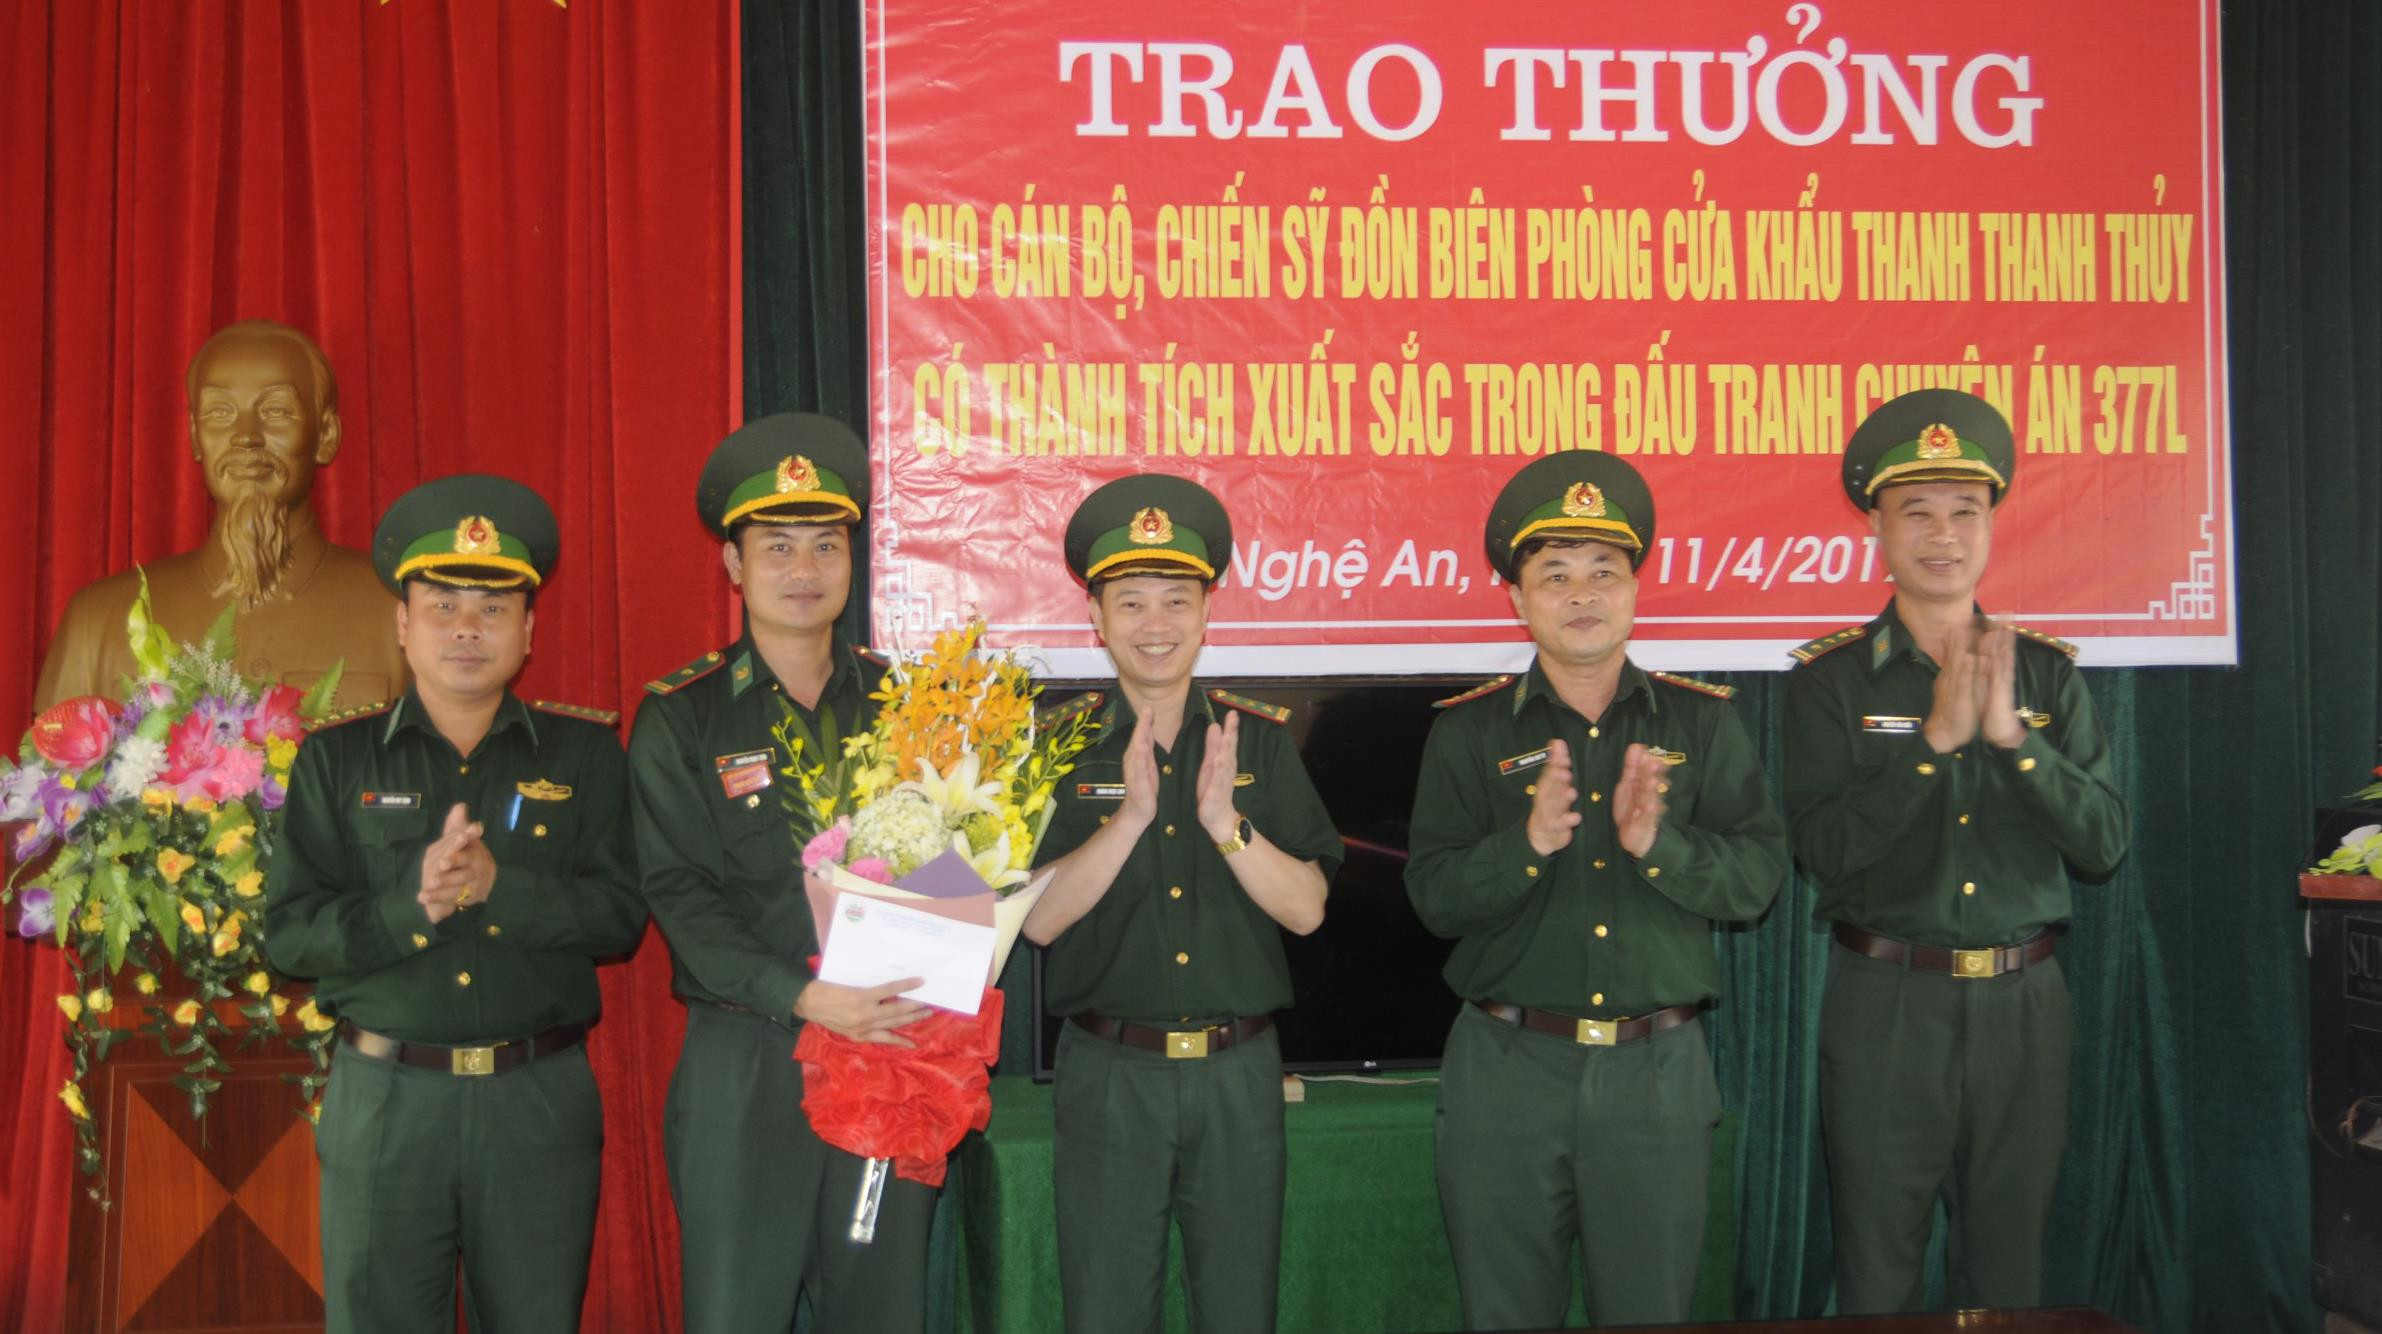 Thượng tá Hoàng Ngọc Linh, Phó chỉ huy trưởng BĐBP Nghệ An, thừa ủy quyền của UBND tỉnh, Bộ tư lệnh BĐBP tặng hoa và quà cho đồn BP cửa khẩu Thanh Thủy. Ảnh: